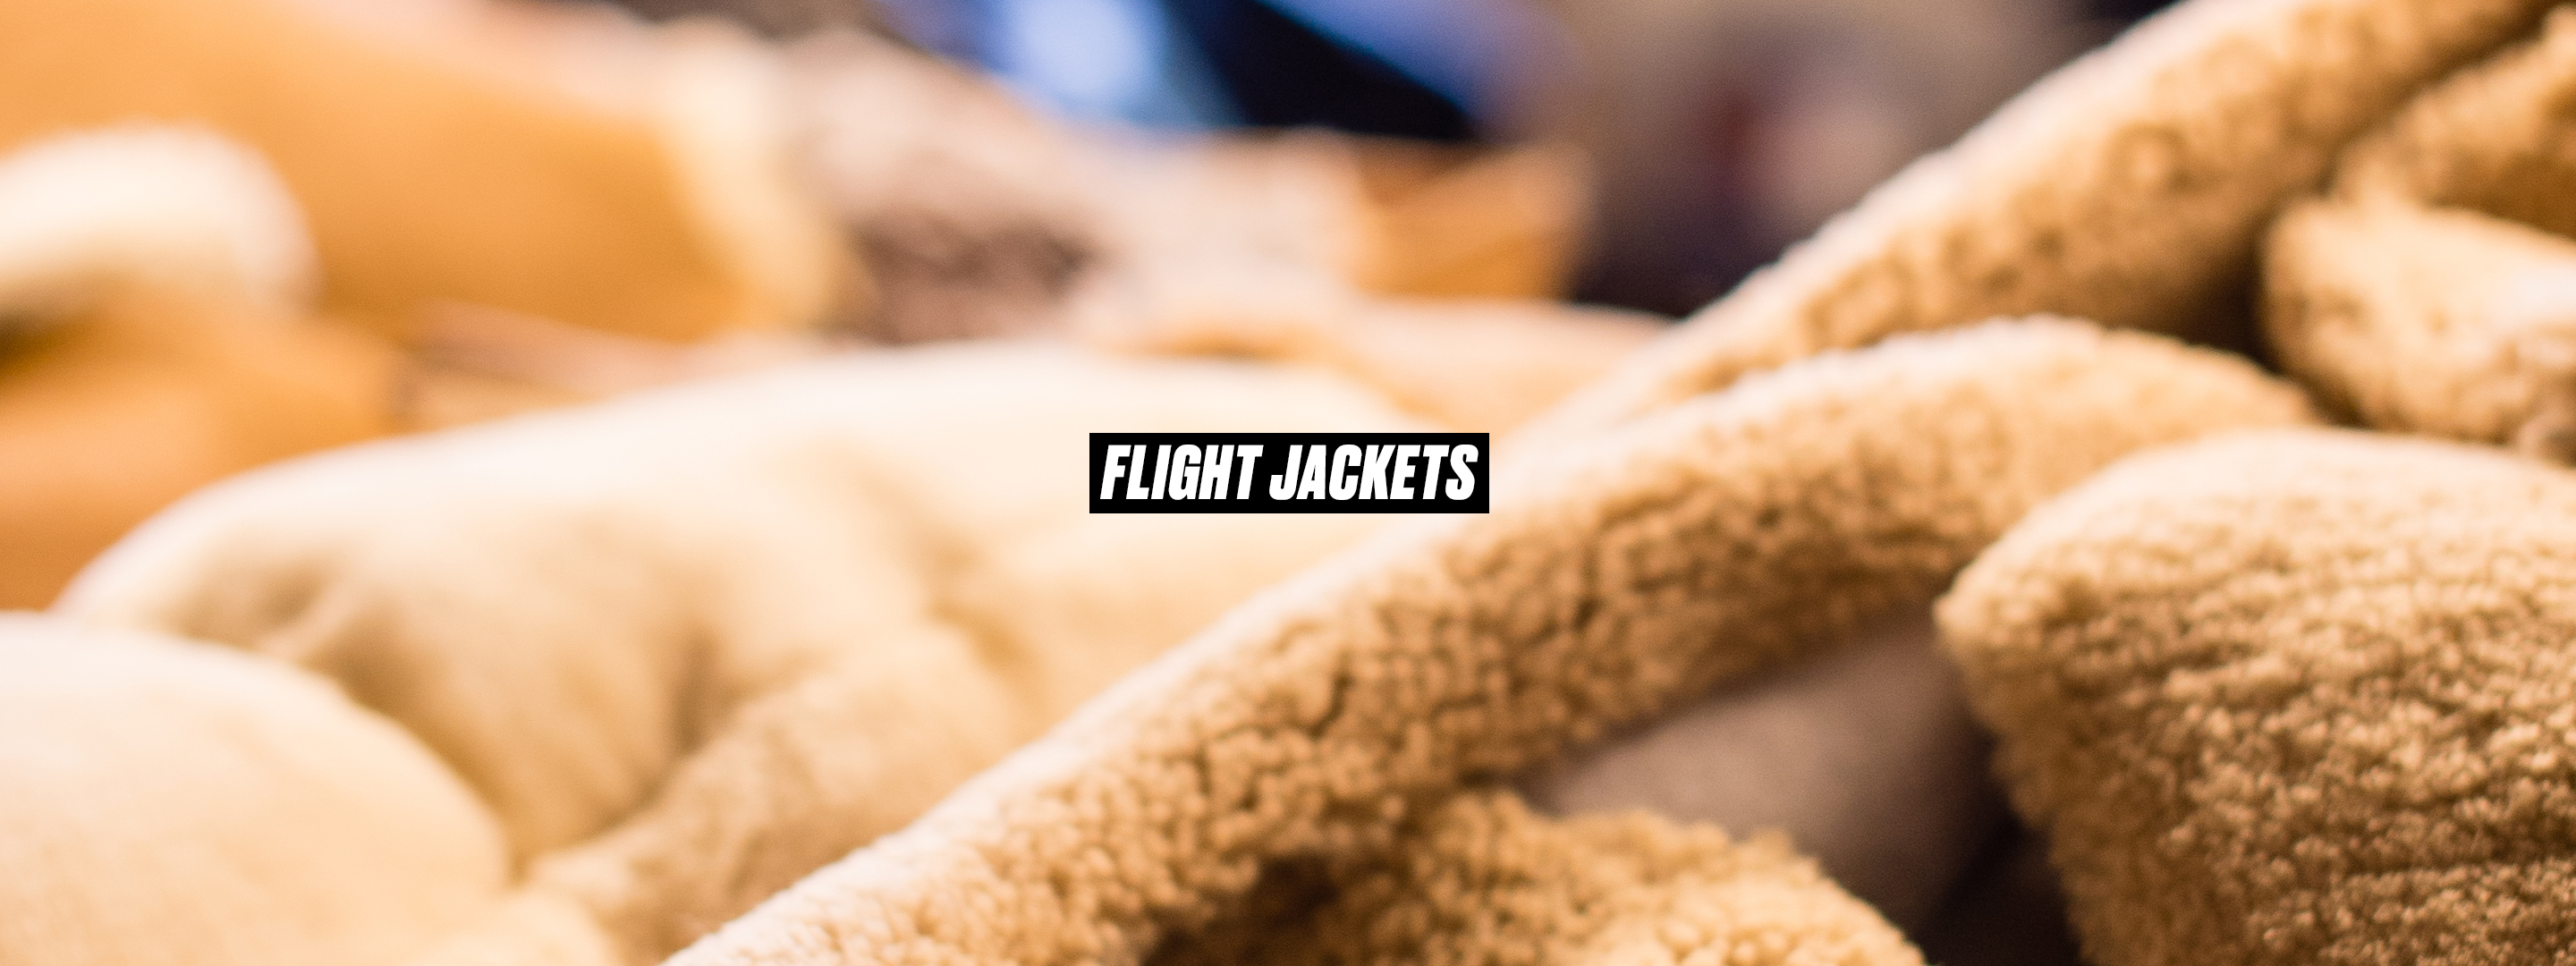 Flight jackets